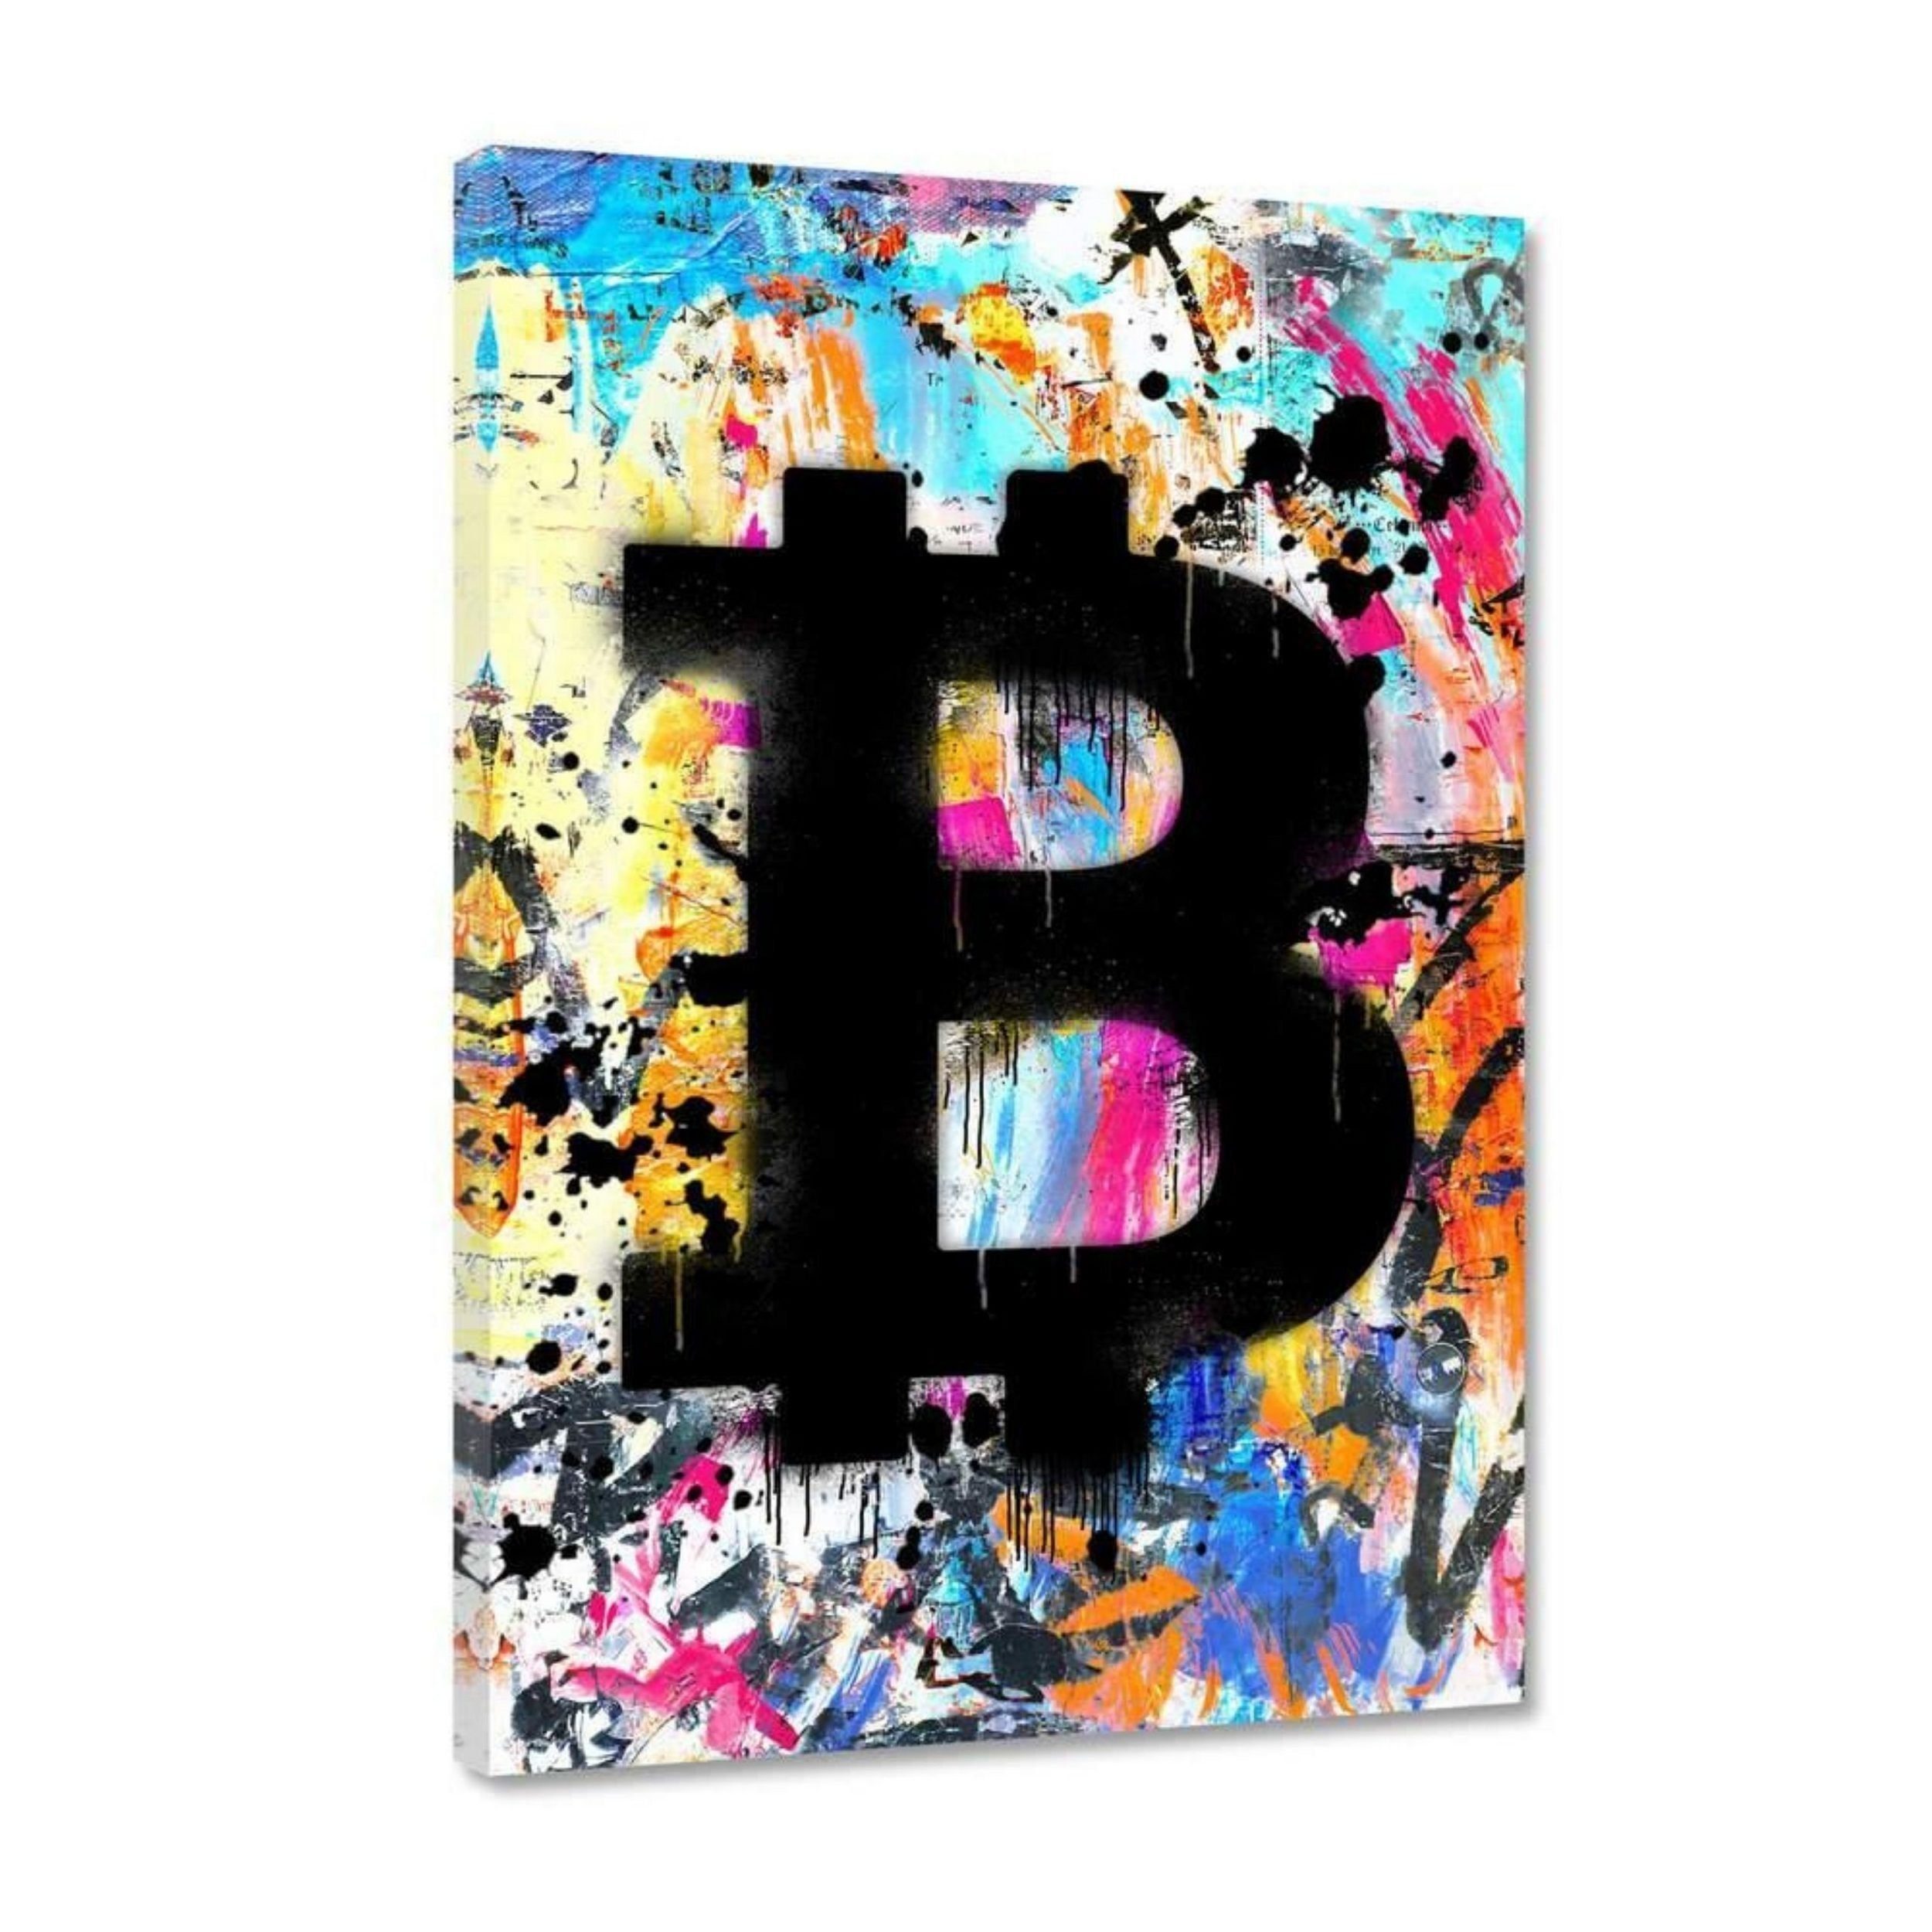 Hustling Sharks Leinwandbild Premium Kunstdruck als XXL Leinwandbild "Graffiti Bitcoin", in 7 unterschiedlichen Größen verfügbar